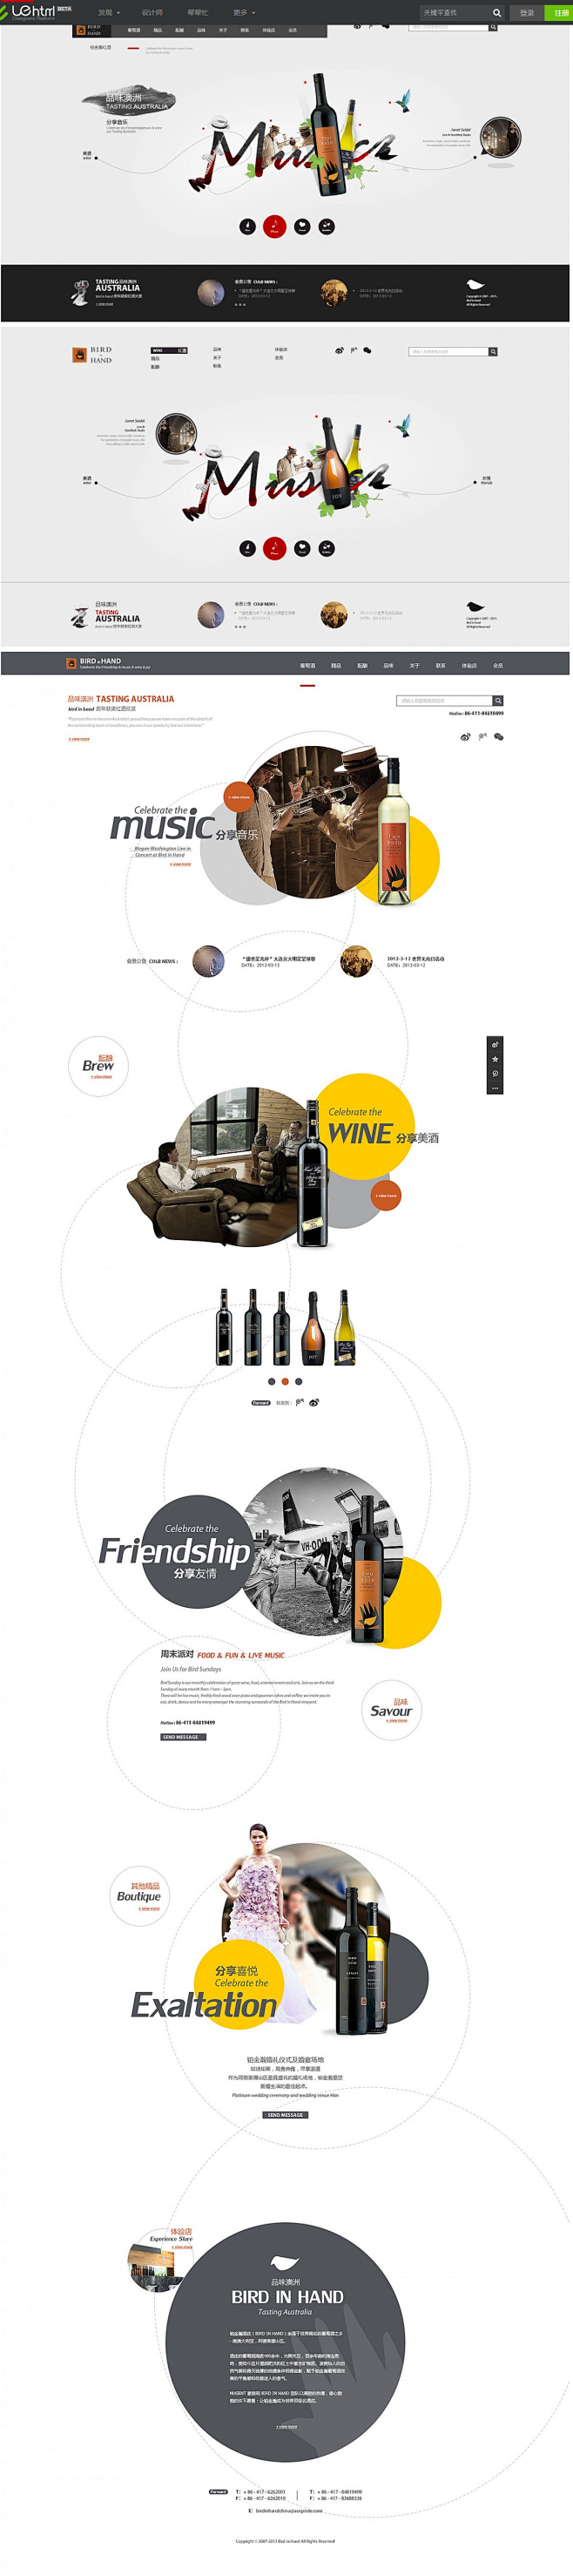 新世界红酒品牌网站 by Sindesi...